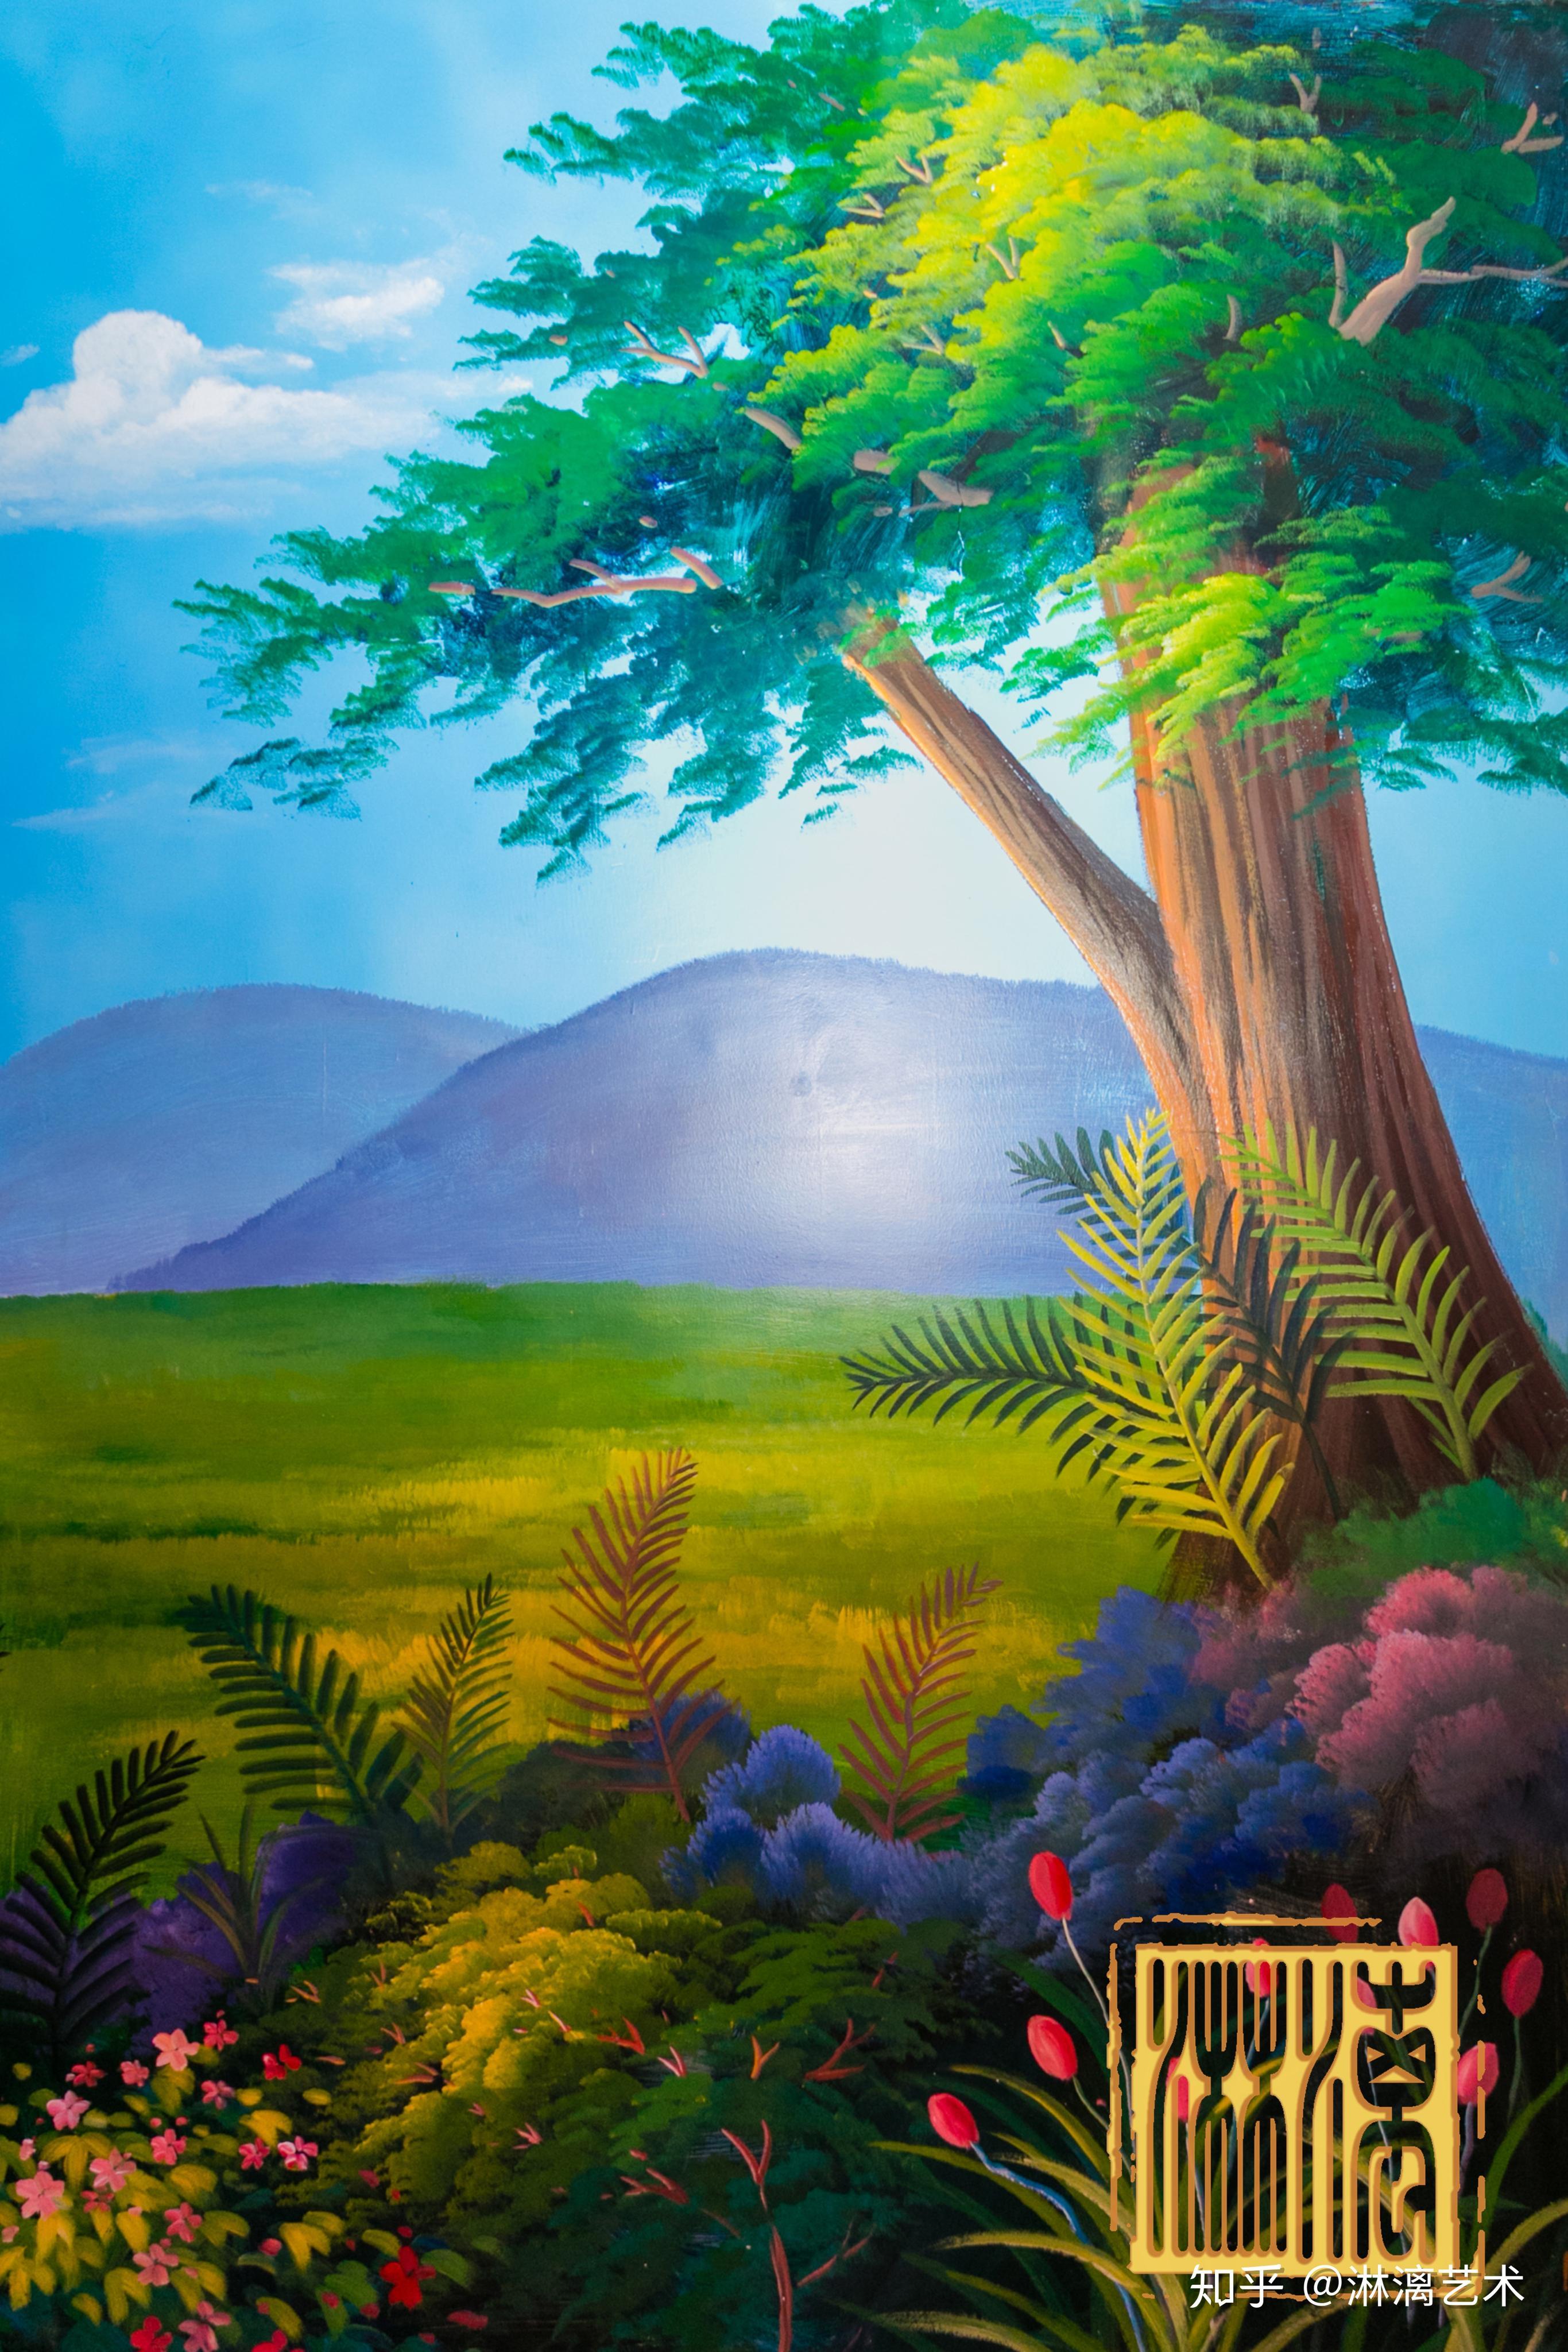 梦幻森林系列顺德海立方墙绘项目【淋漓艺术作品】墙绘,涂鸦定制设计